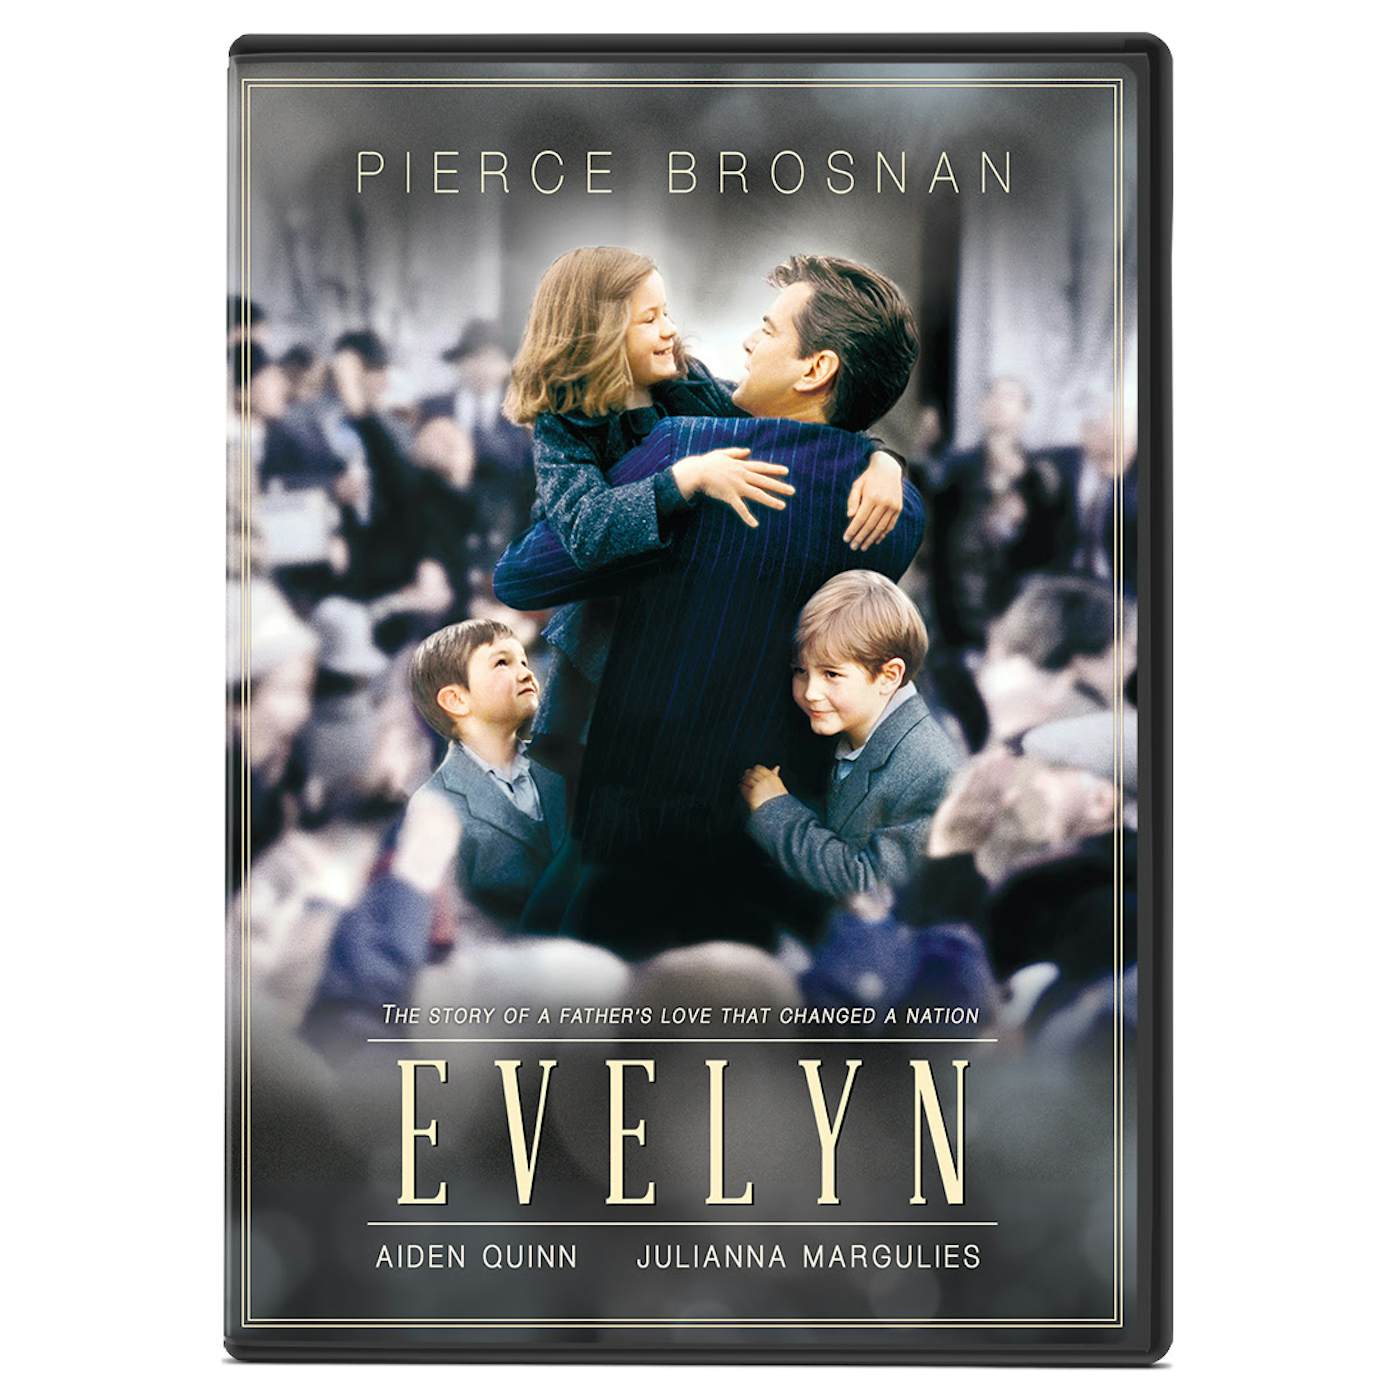 EVELYN DVD